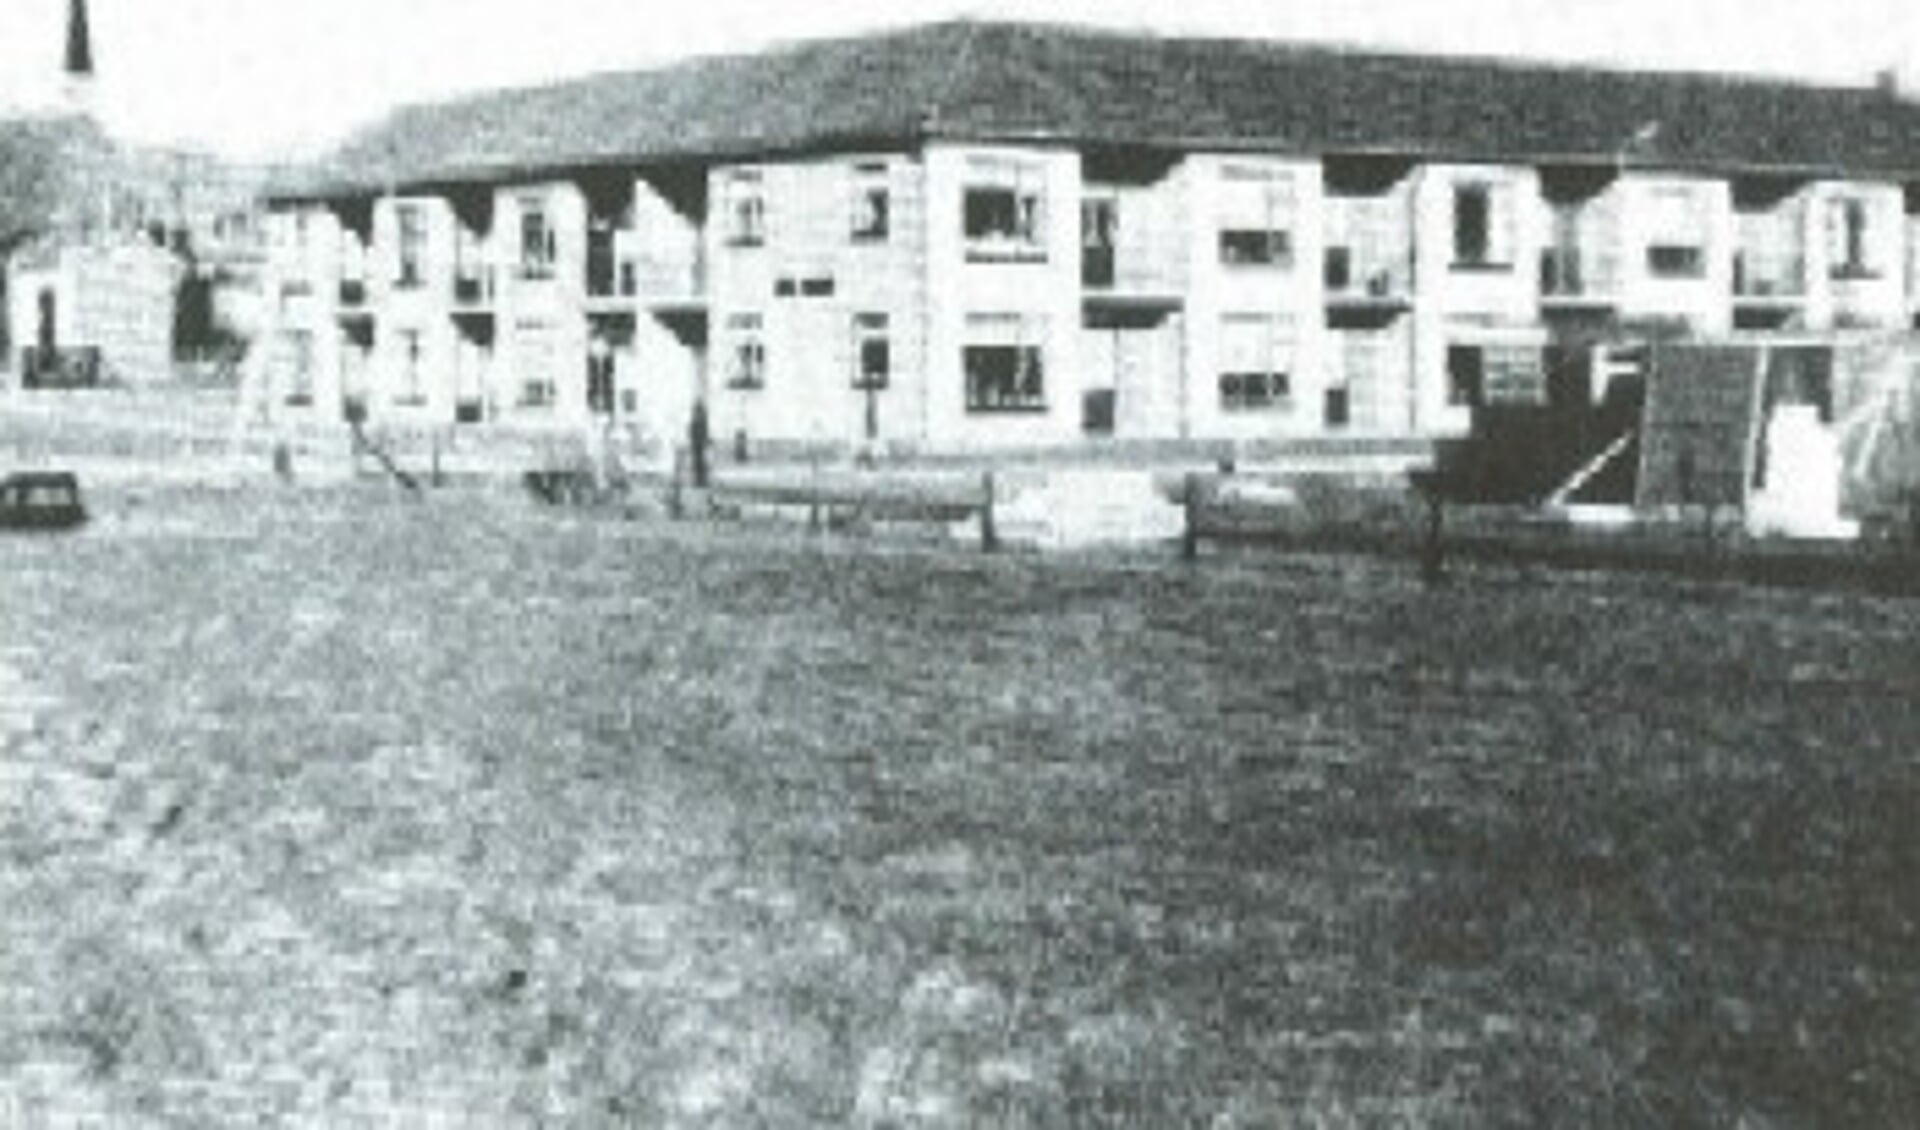 Het seniorencomplex Den Andel net na de oplevering in 1972.